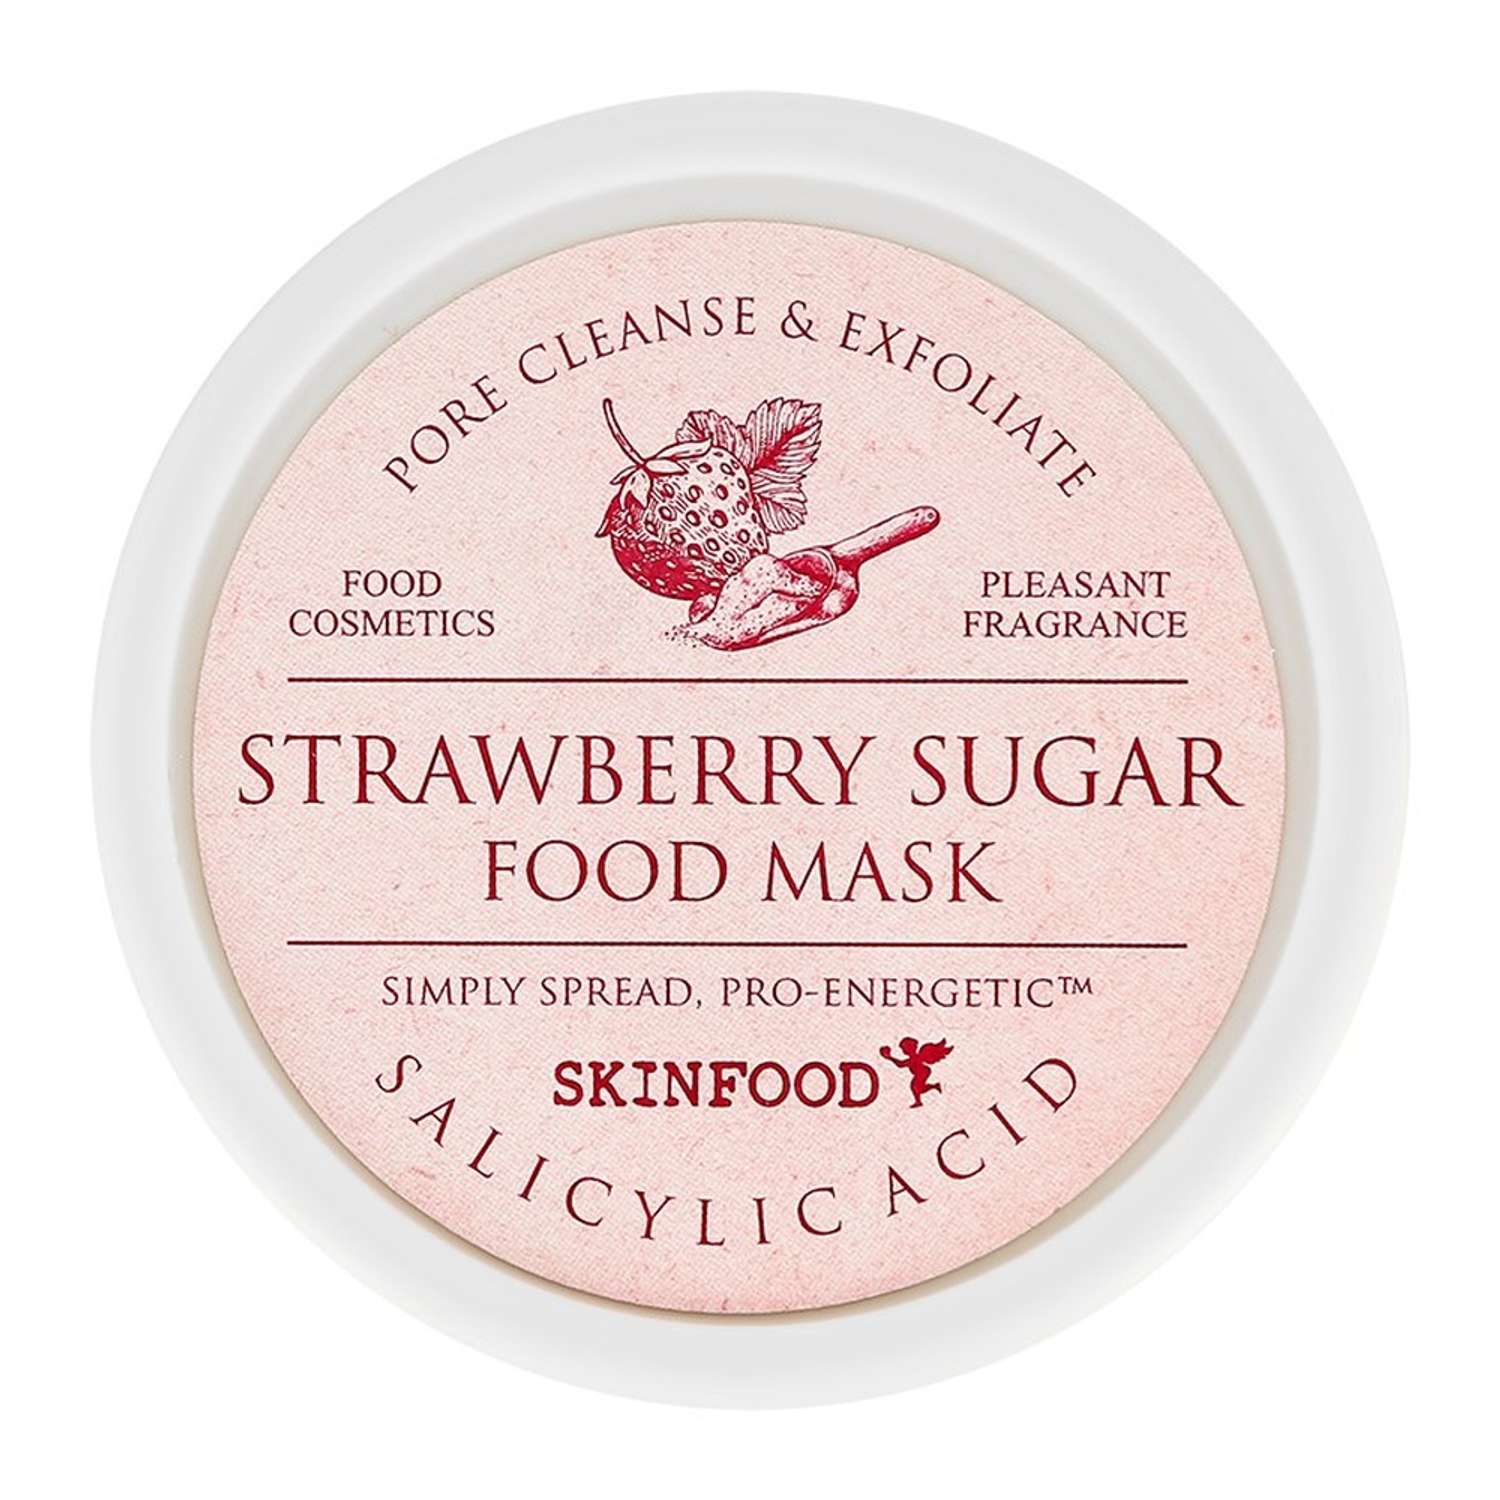 Маска для лица Skinfood Food mask с клубникой отшелушивающая и очищающая поры 120 г - фото 2